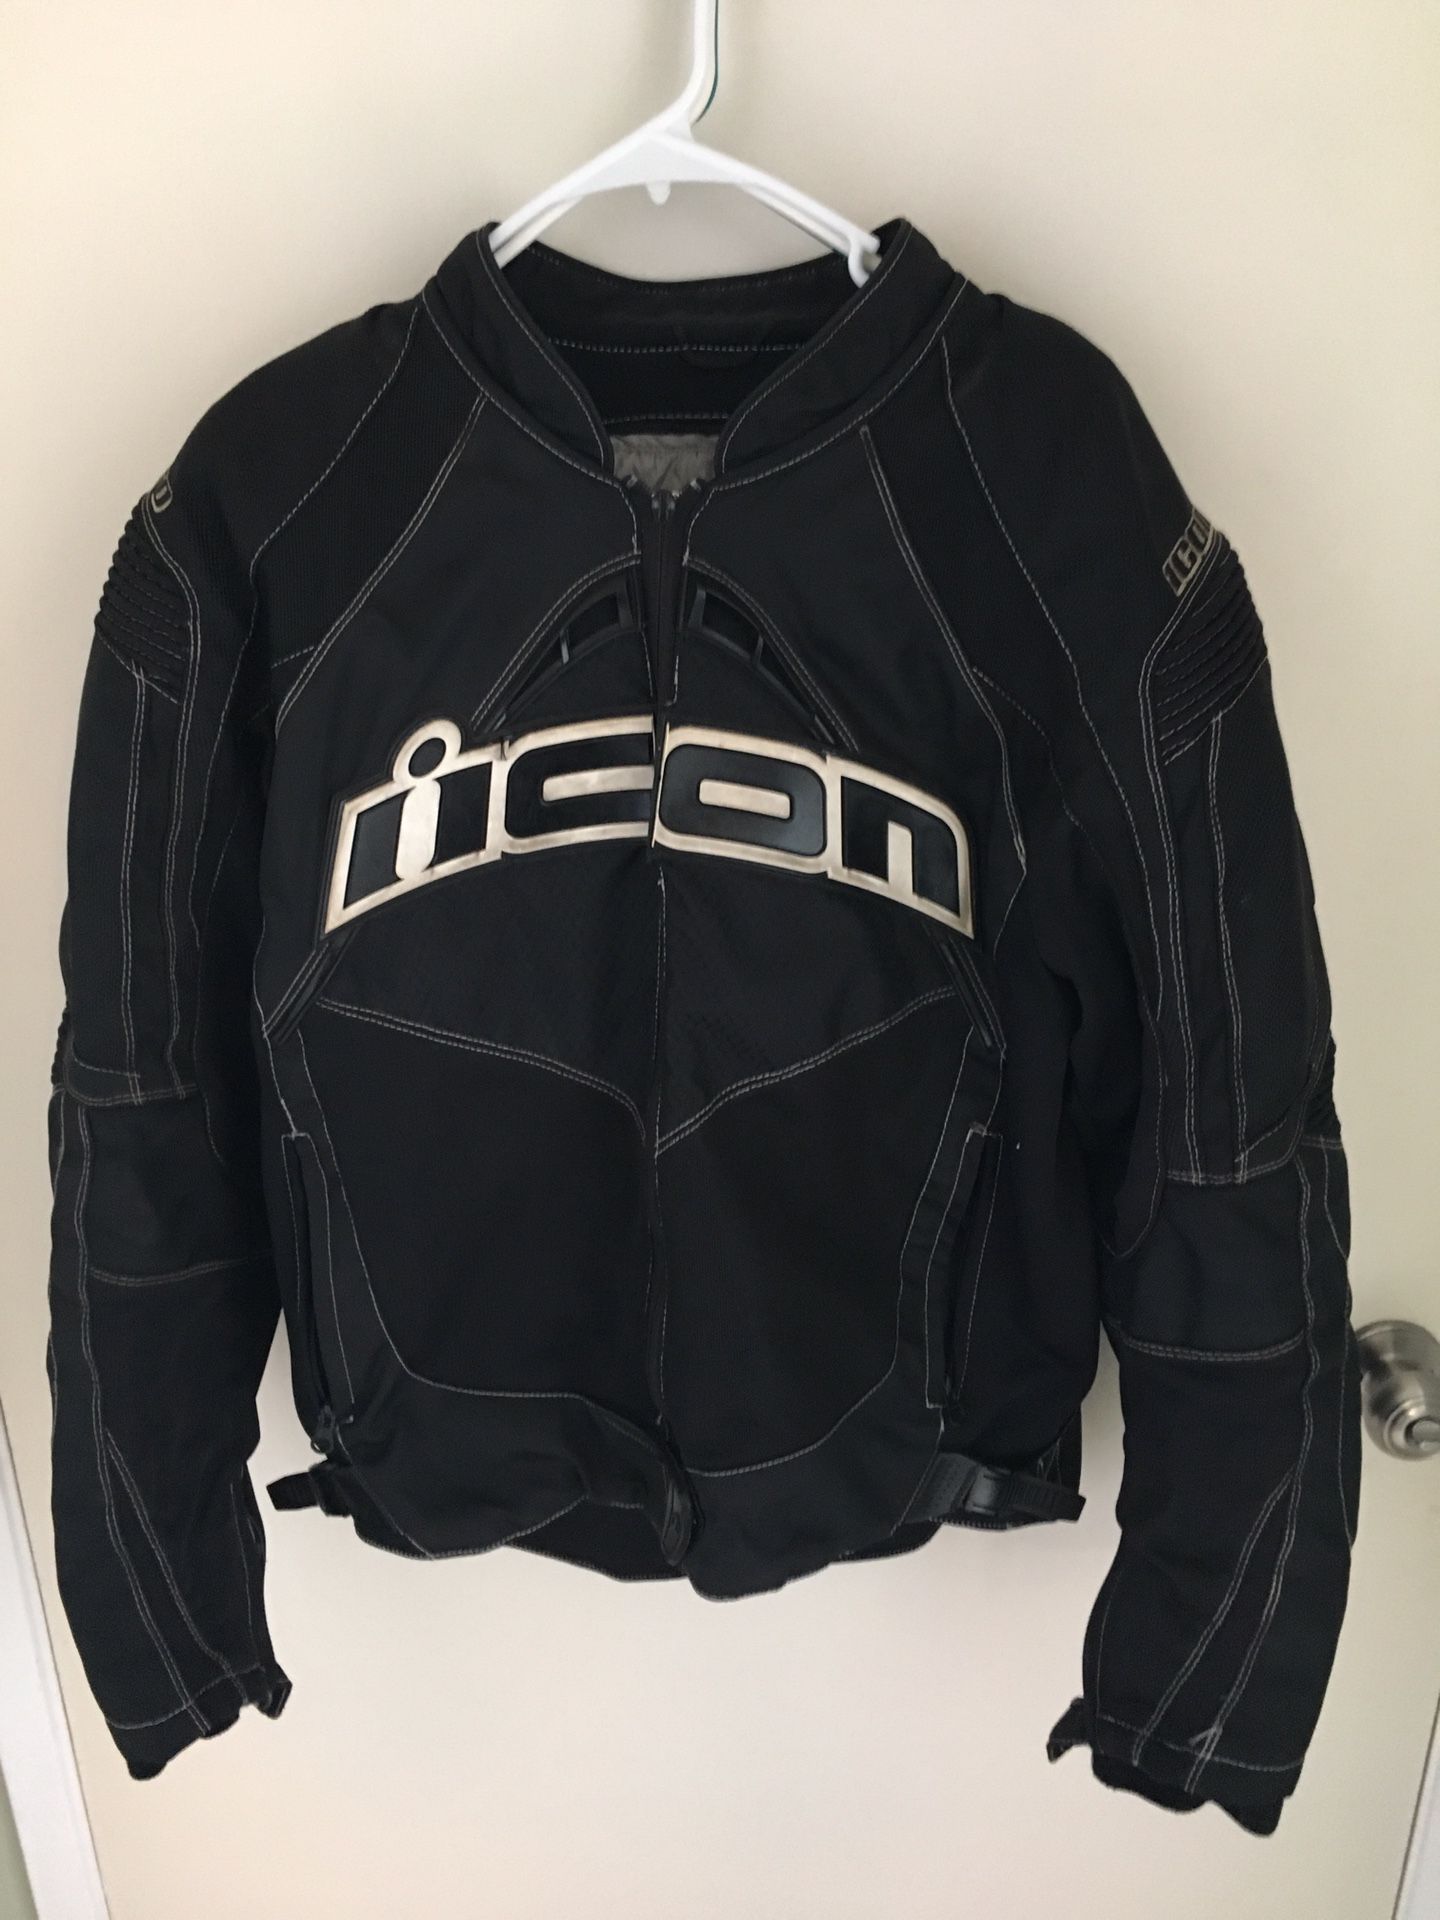 Icon motorcycle jacket (medium)